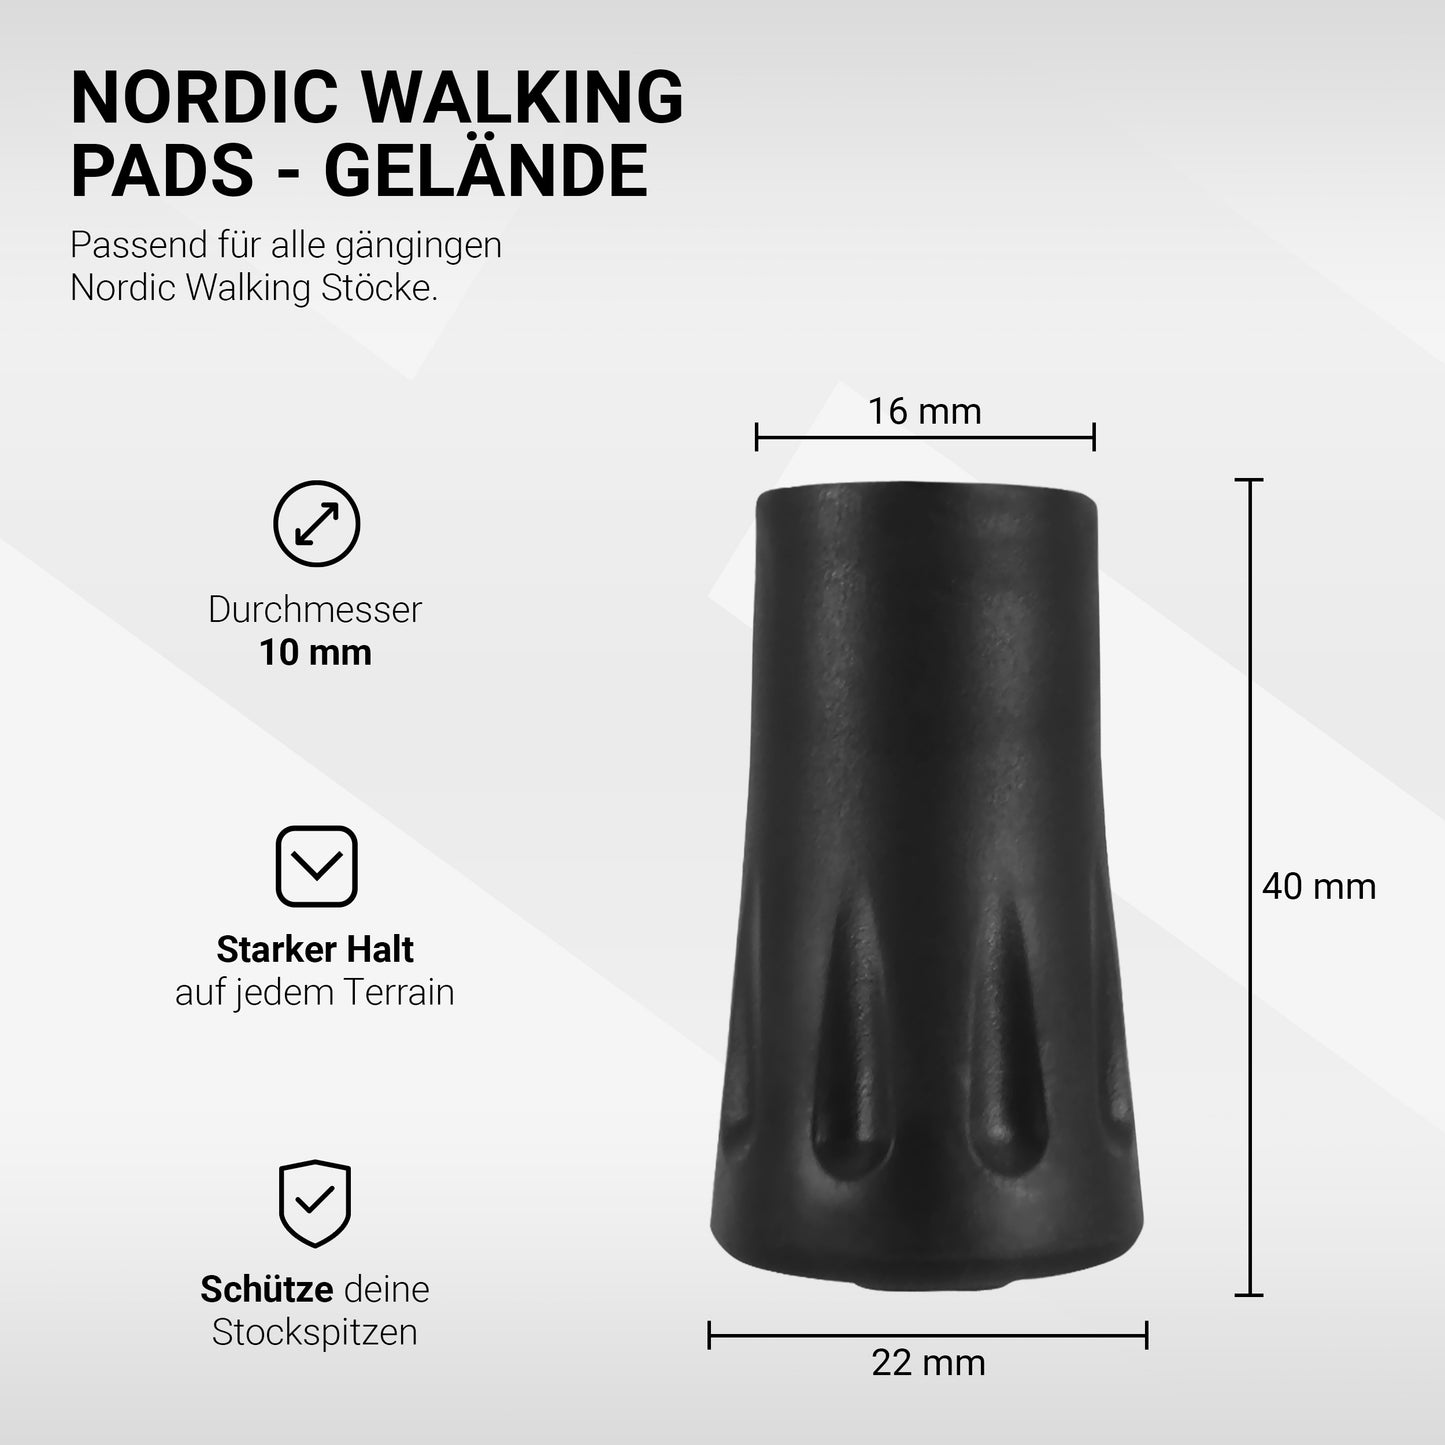 Nordic Walking Pads